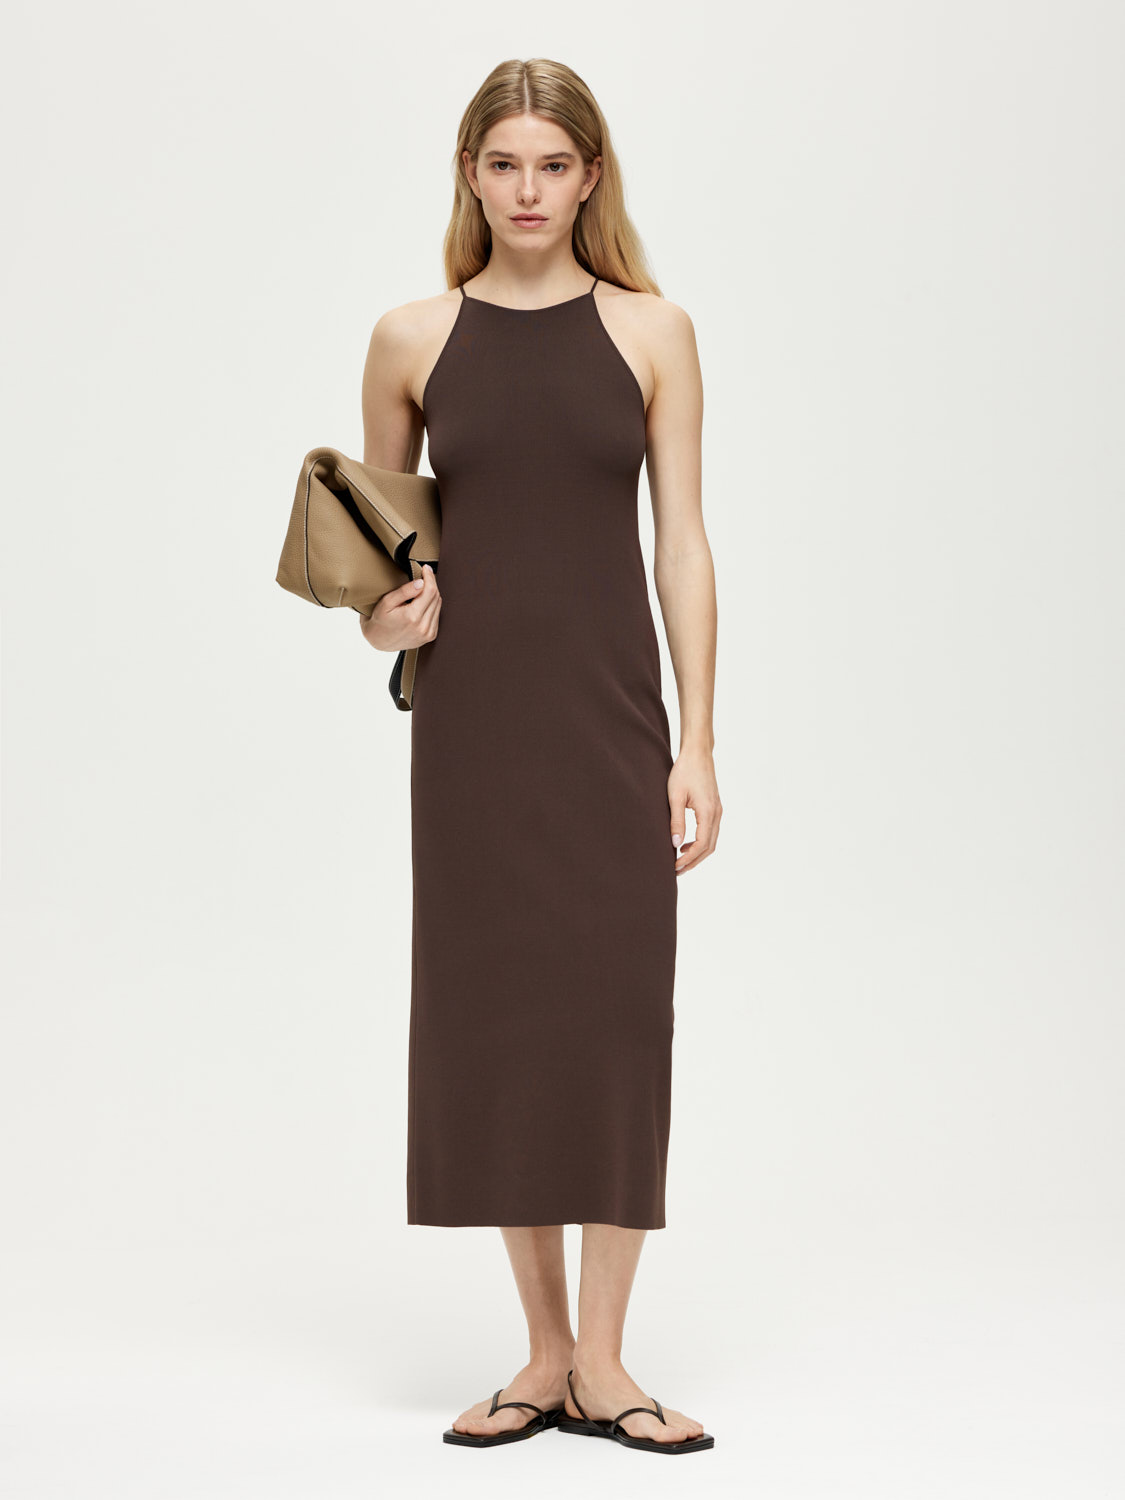 LSSM-780013 Платье трикотажное (коричневый, S)